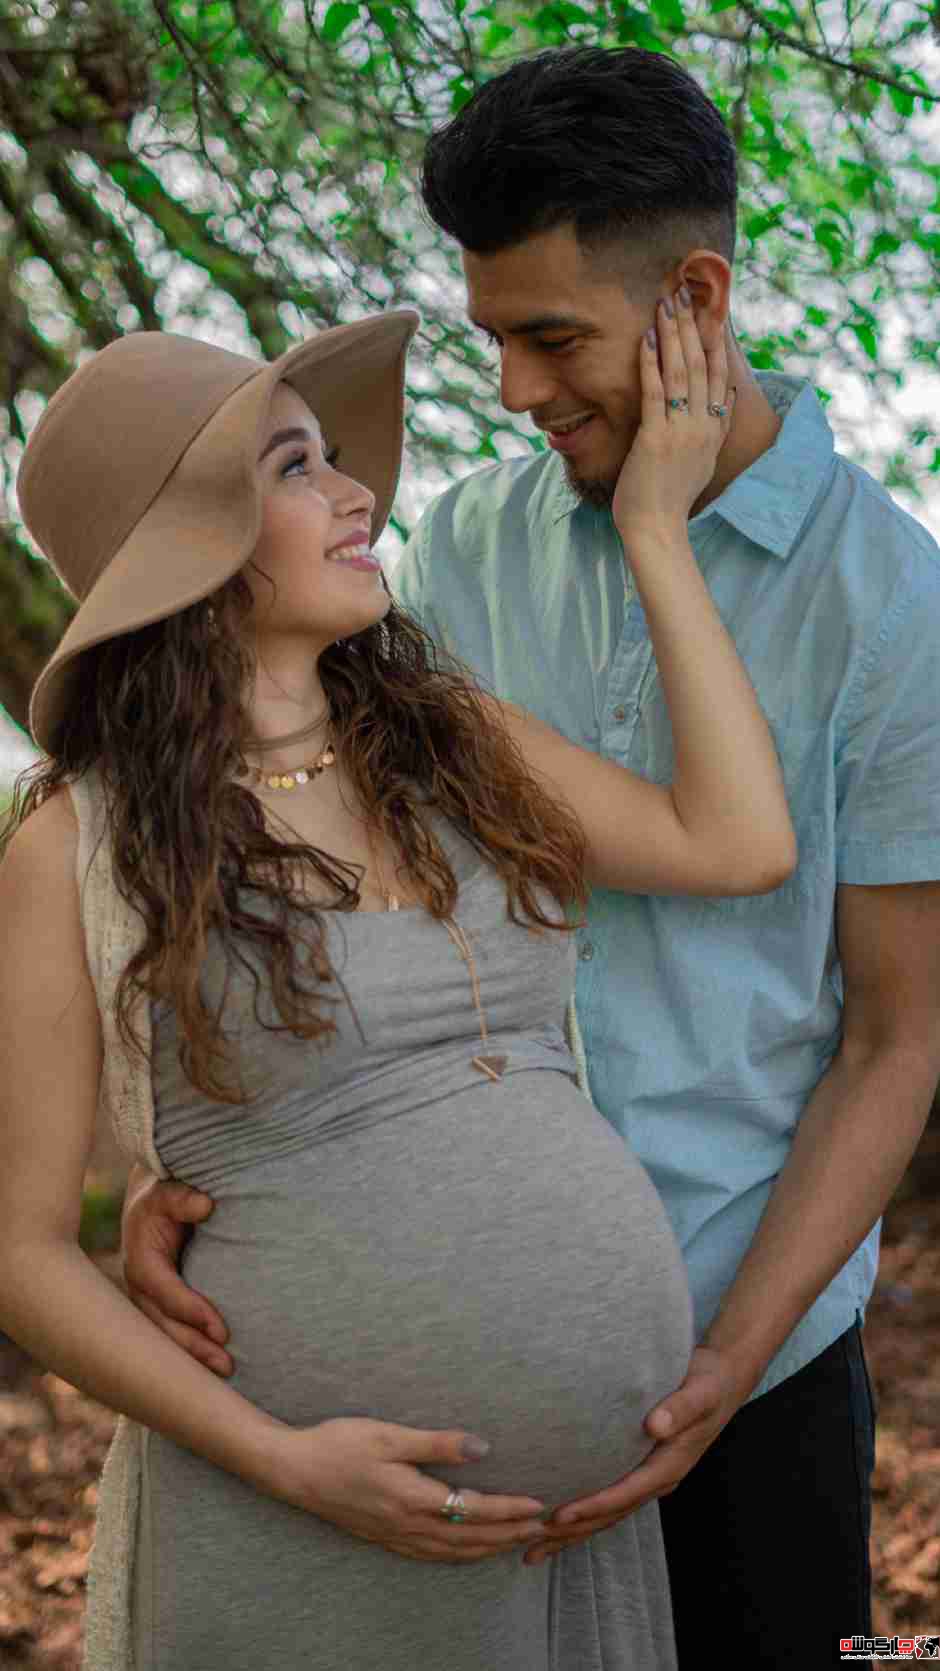 چگونه همسر باردار خود را خوشحال کنیم
